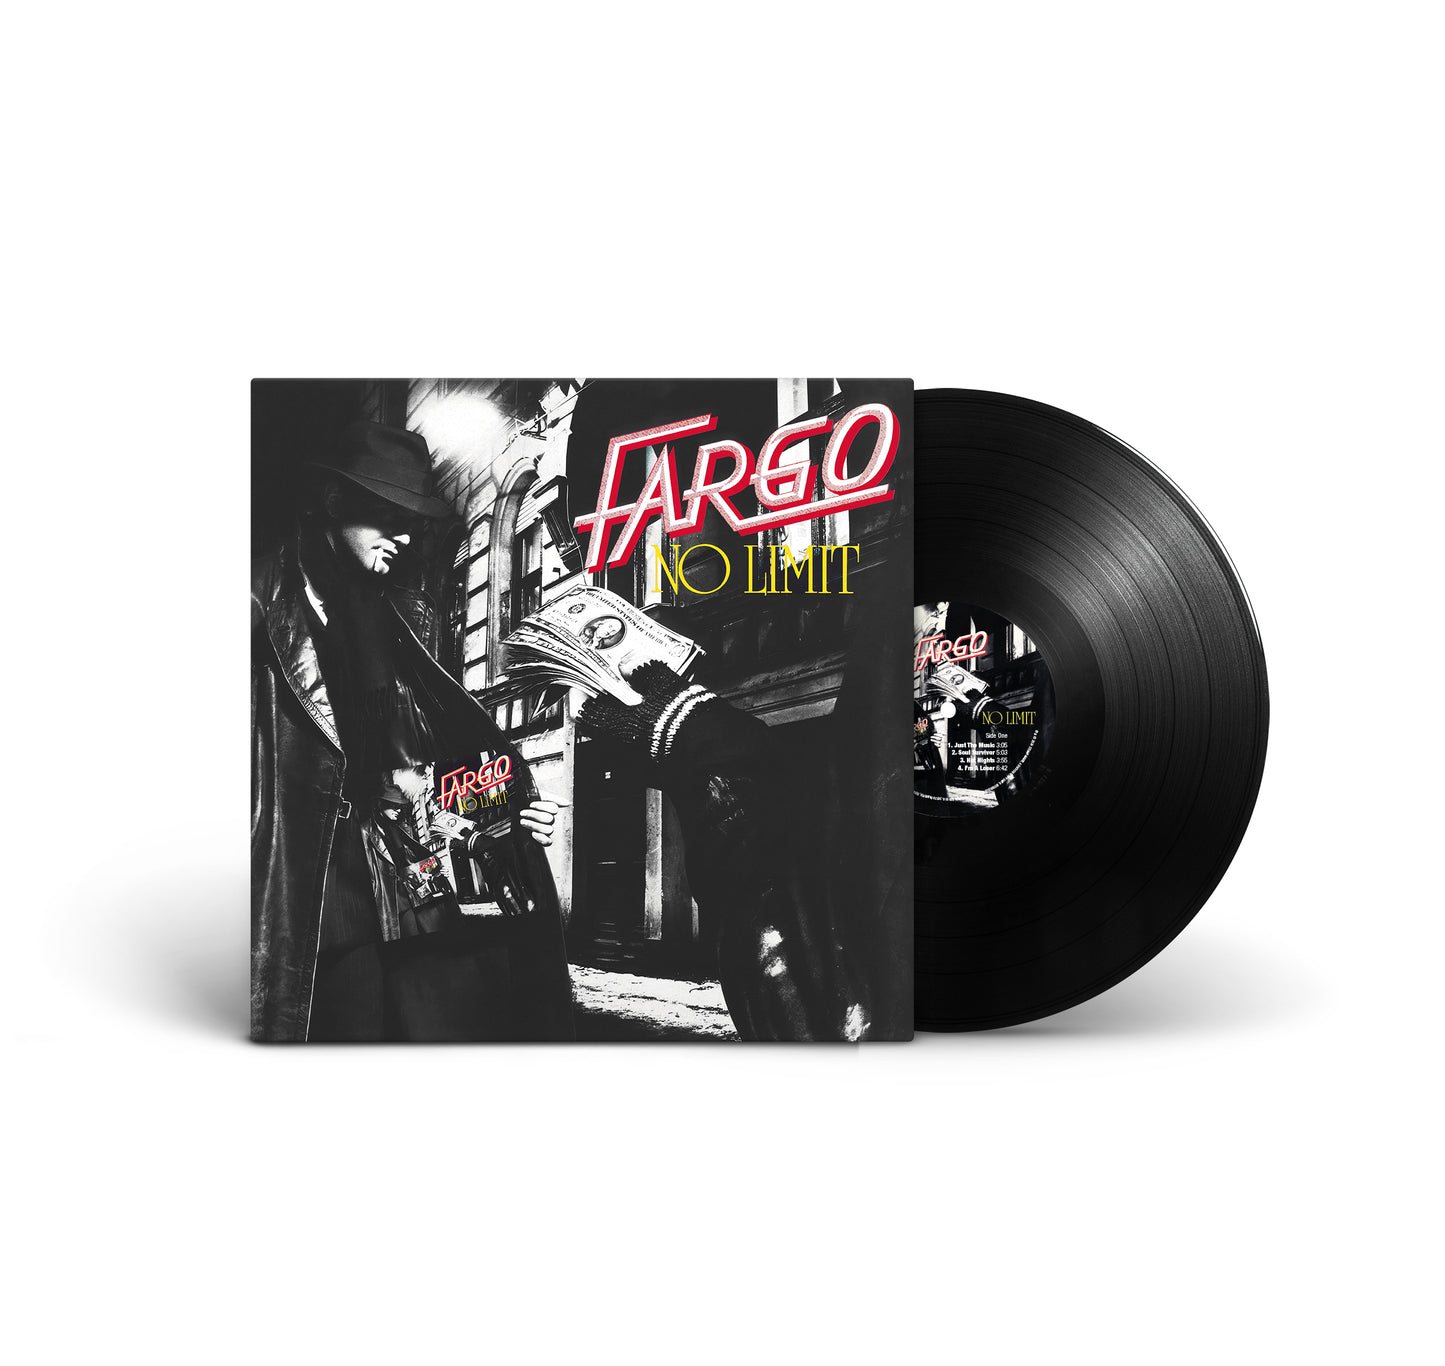 Fargo "No Limit" LP